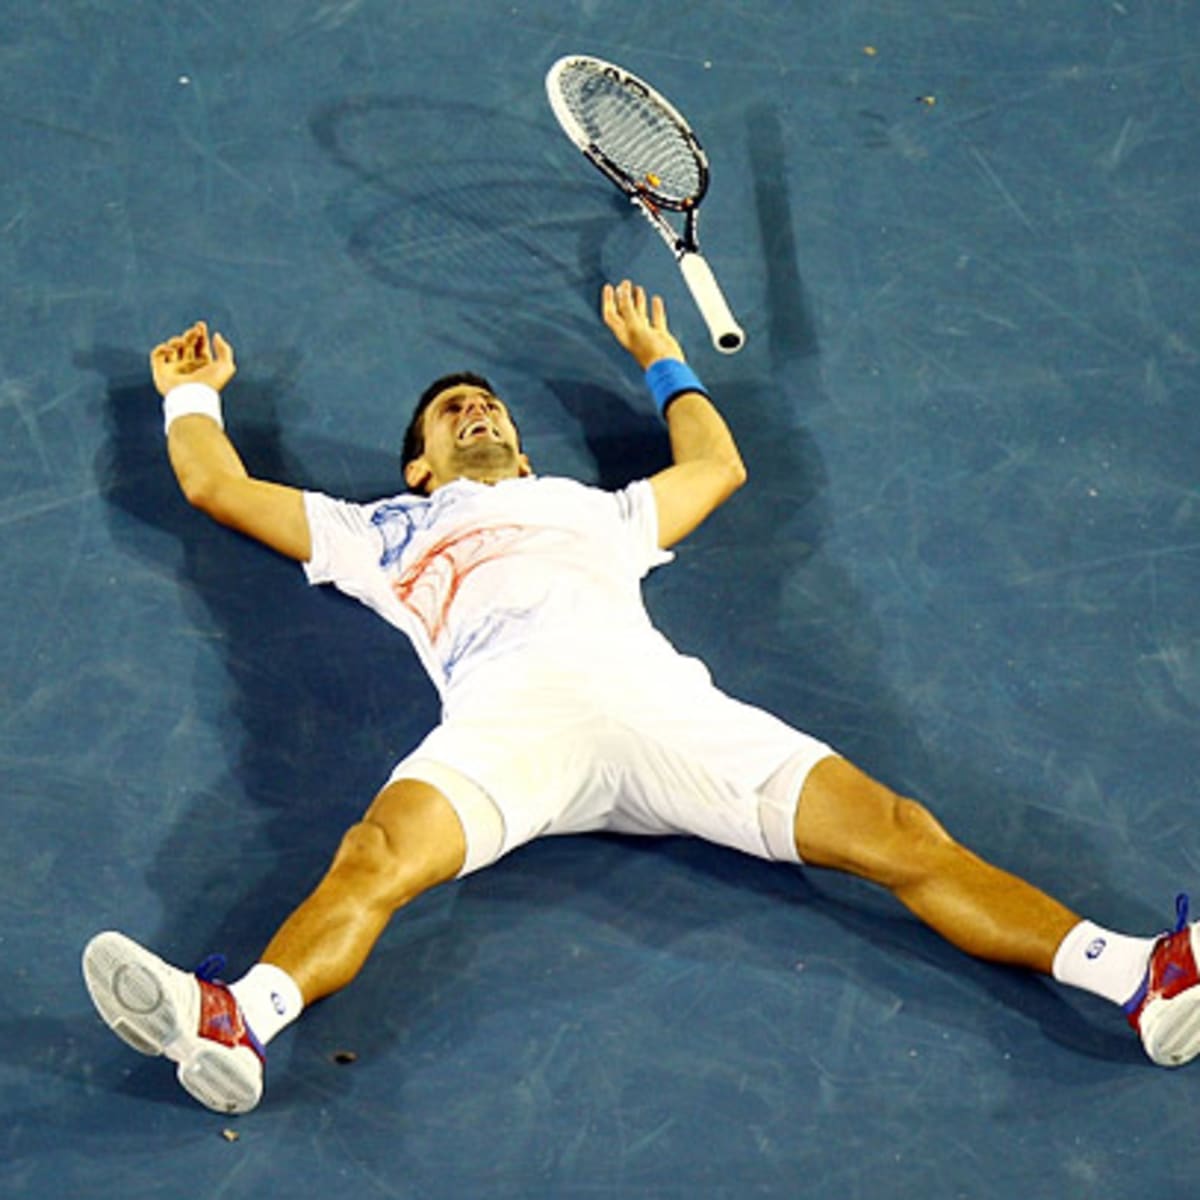 Novak Djokovic vs